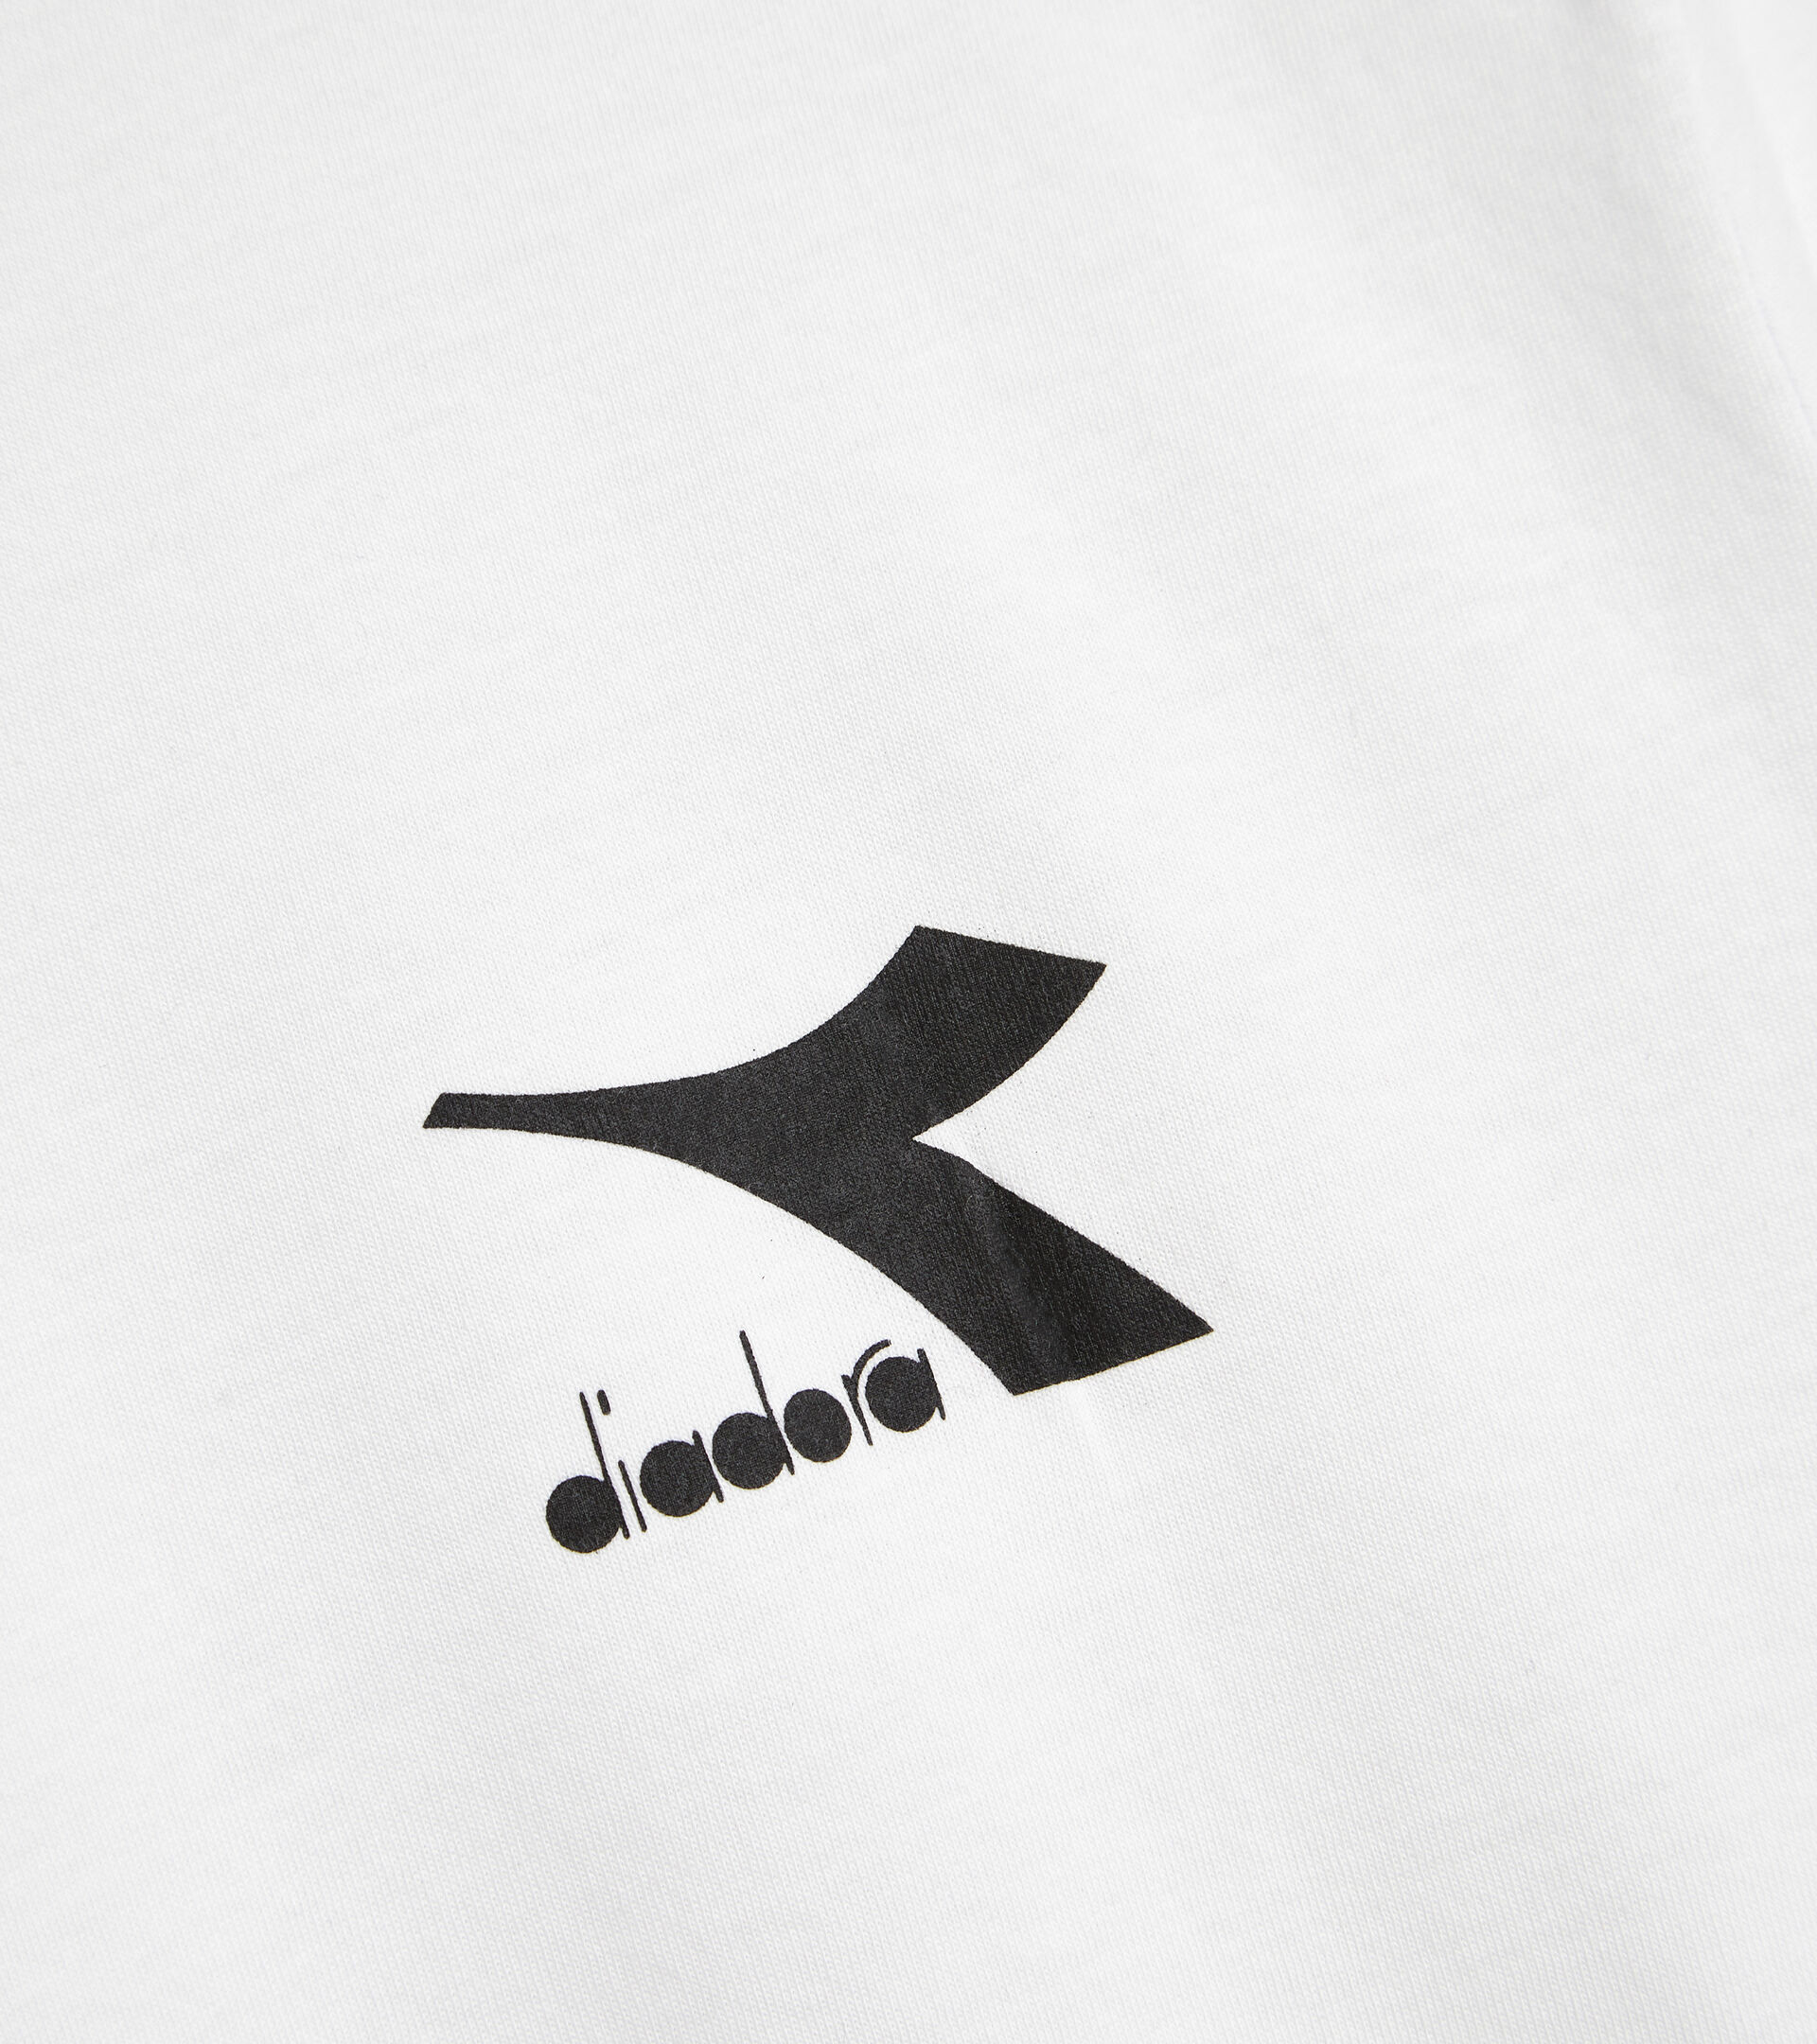 Camiseta de algodón - Hombre T-SHIRT SS CORE BLANCO VIVO - Diadora